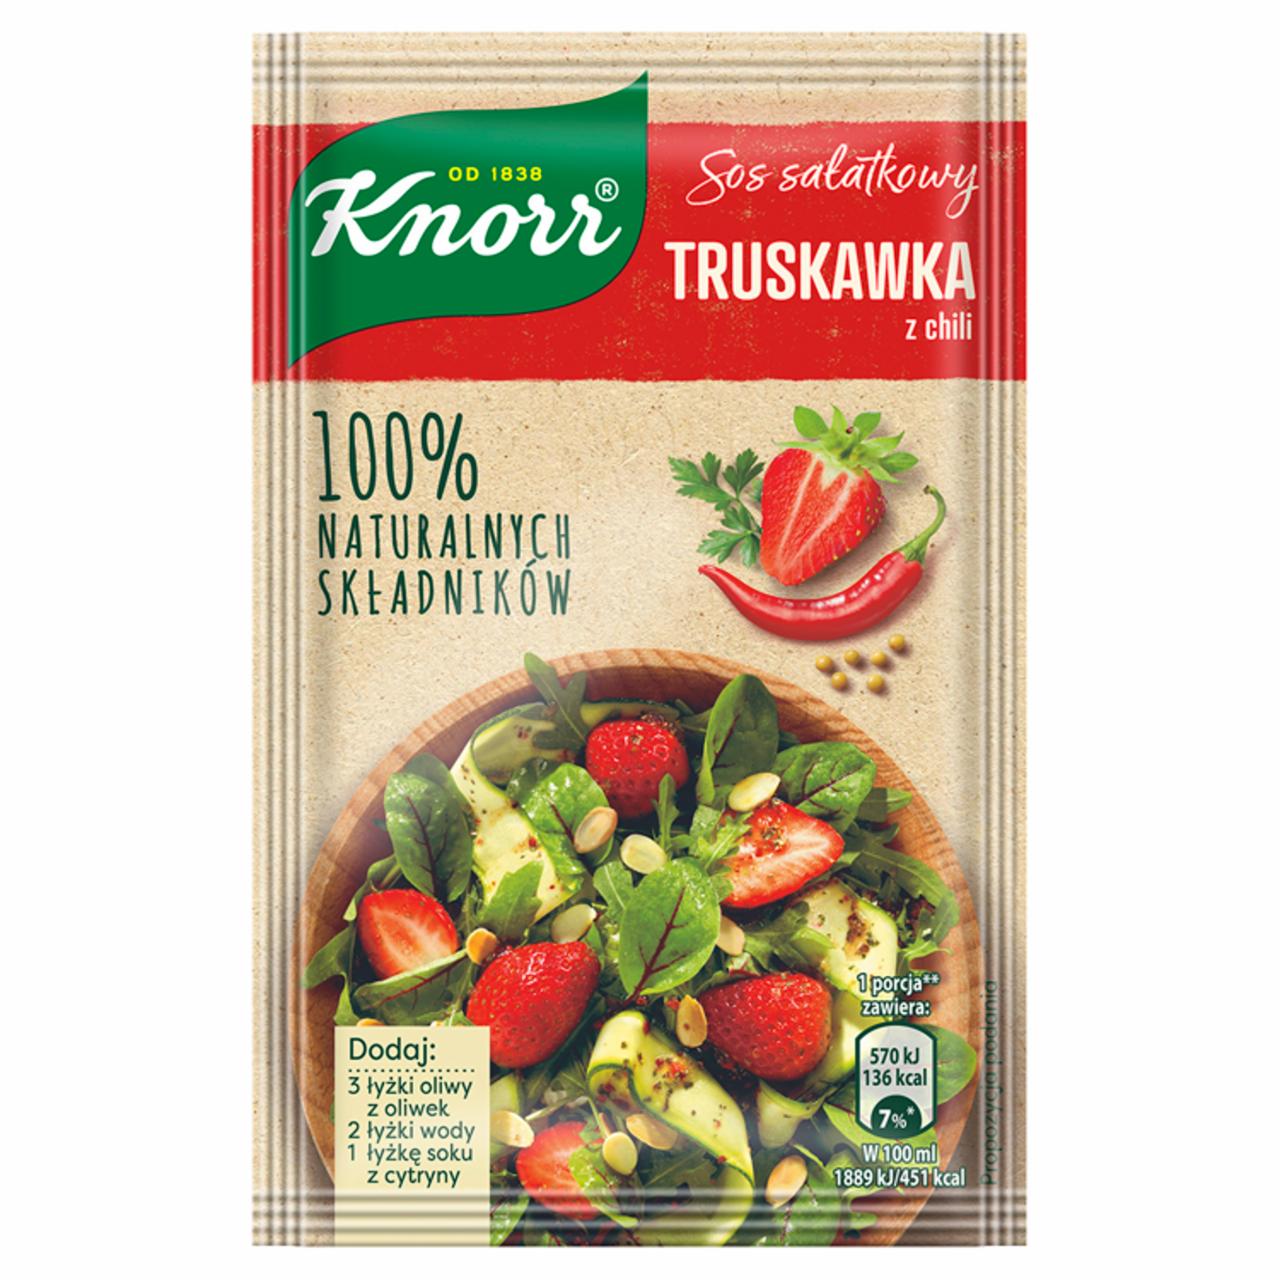 Zdjęcia - Knorr Sos sałatkowy truskawka z chili 8 g